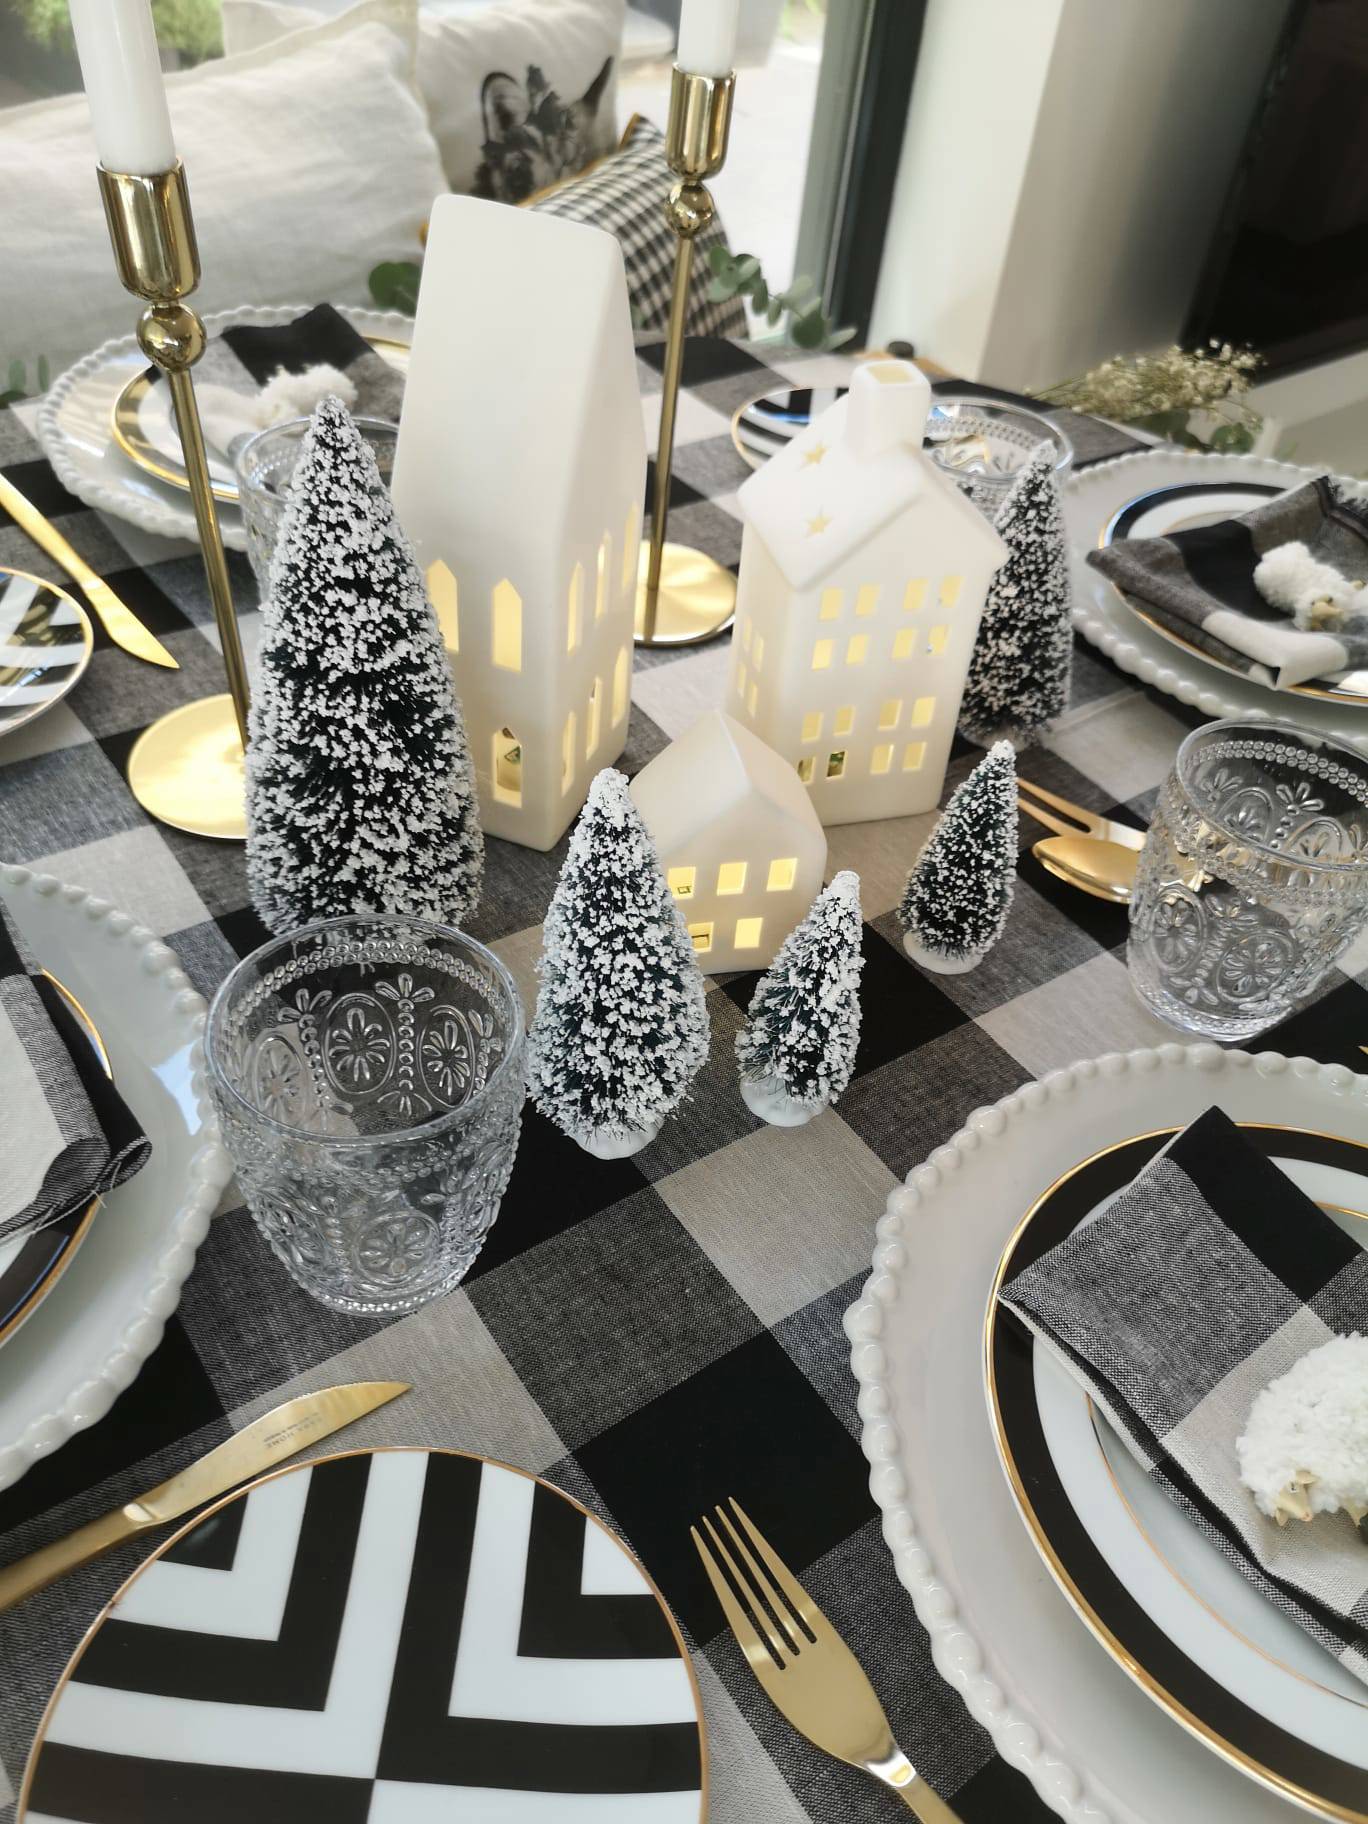 Comedor con mesa navideña con mantel de cuadros vichy, velas, vajilla, arbolitos decorativos y luces en forma de casitas de IKEA.